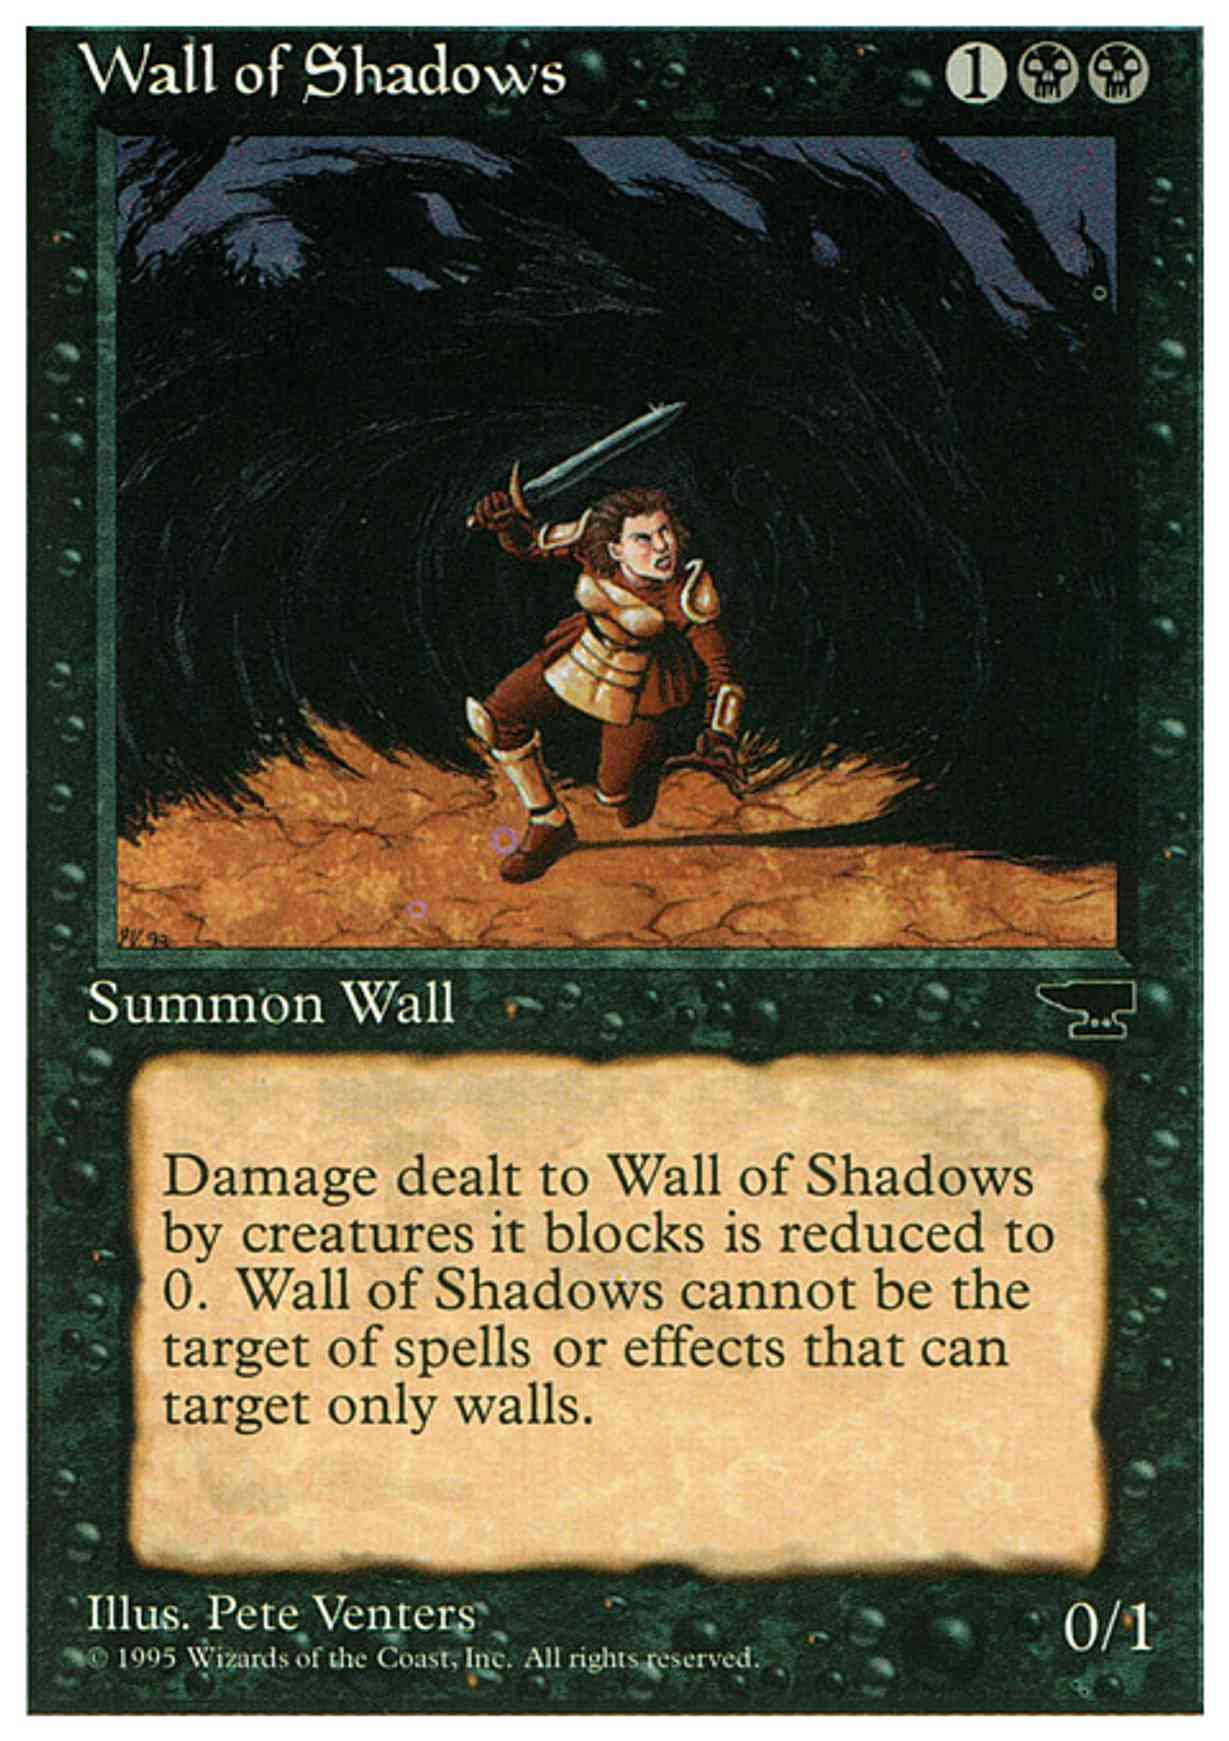 Wall of Shadows magic card front